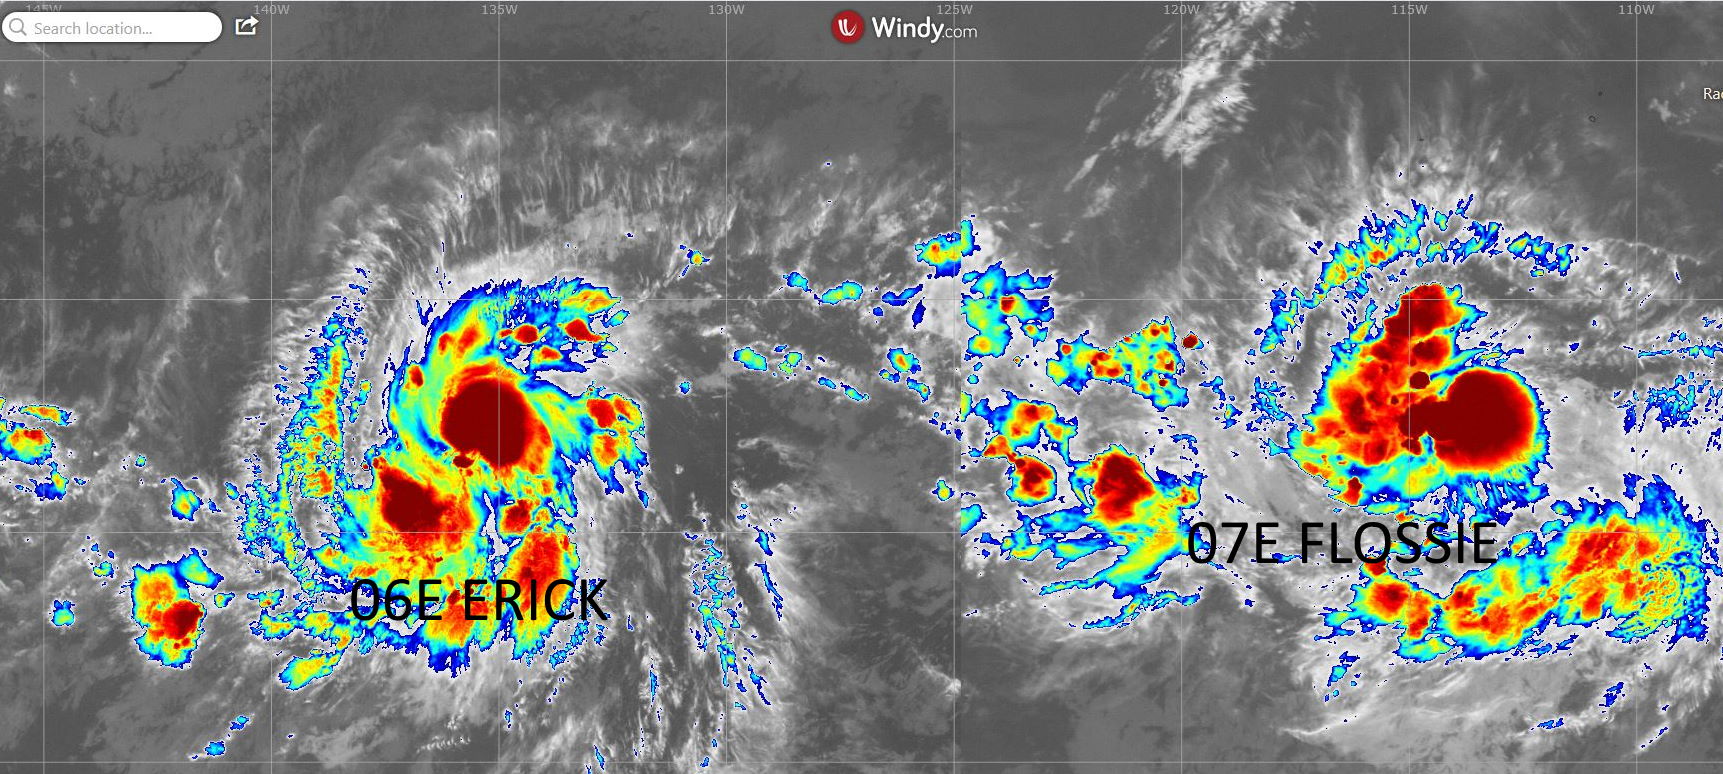 Sur la gauche la forte tempête tropicale ERICK(06E). 2300km plus à l'Est évolue la tempête tropicale modérée FLOSSIE(07E).